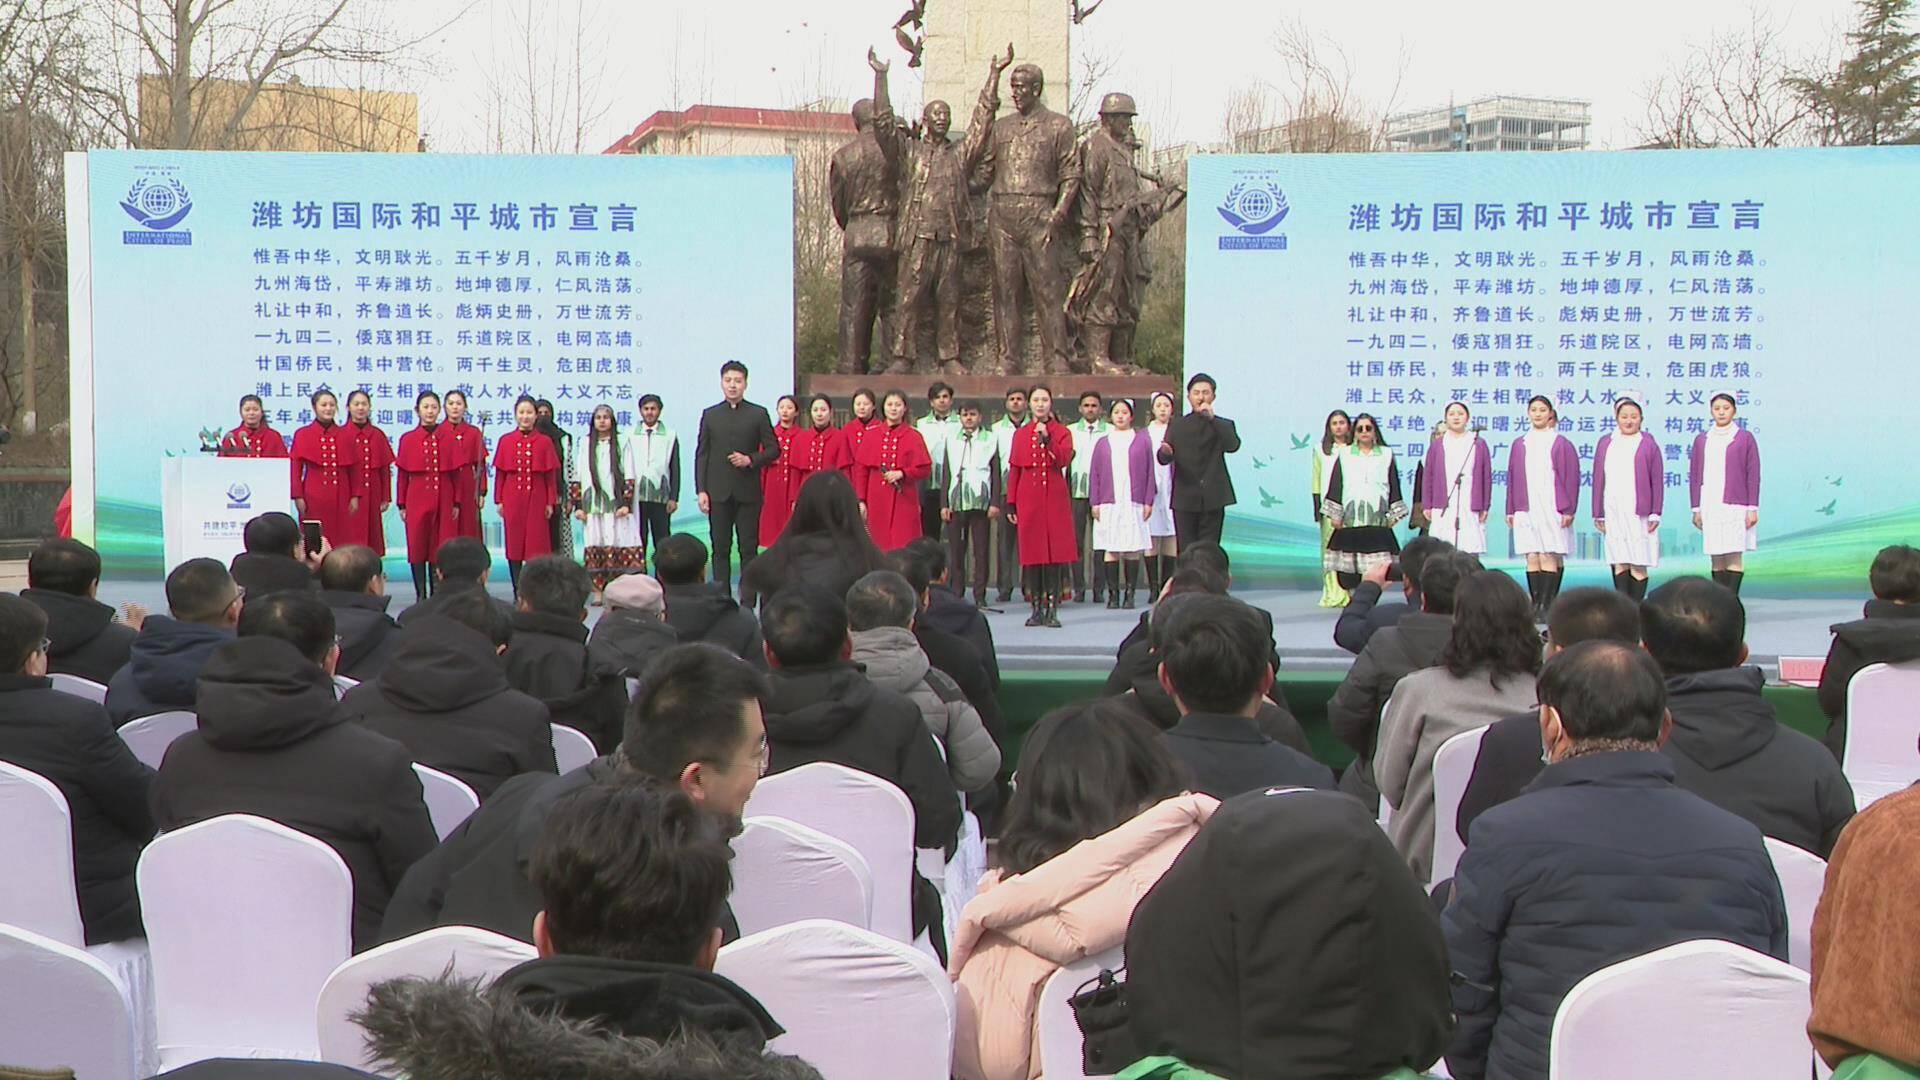 潍坊市举行获评“国际和平城市”三周年纪念活动